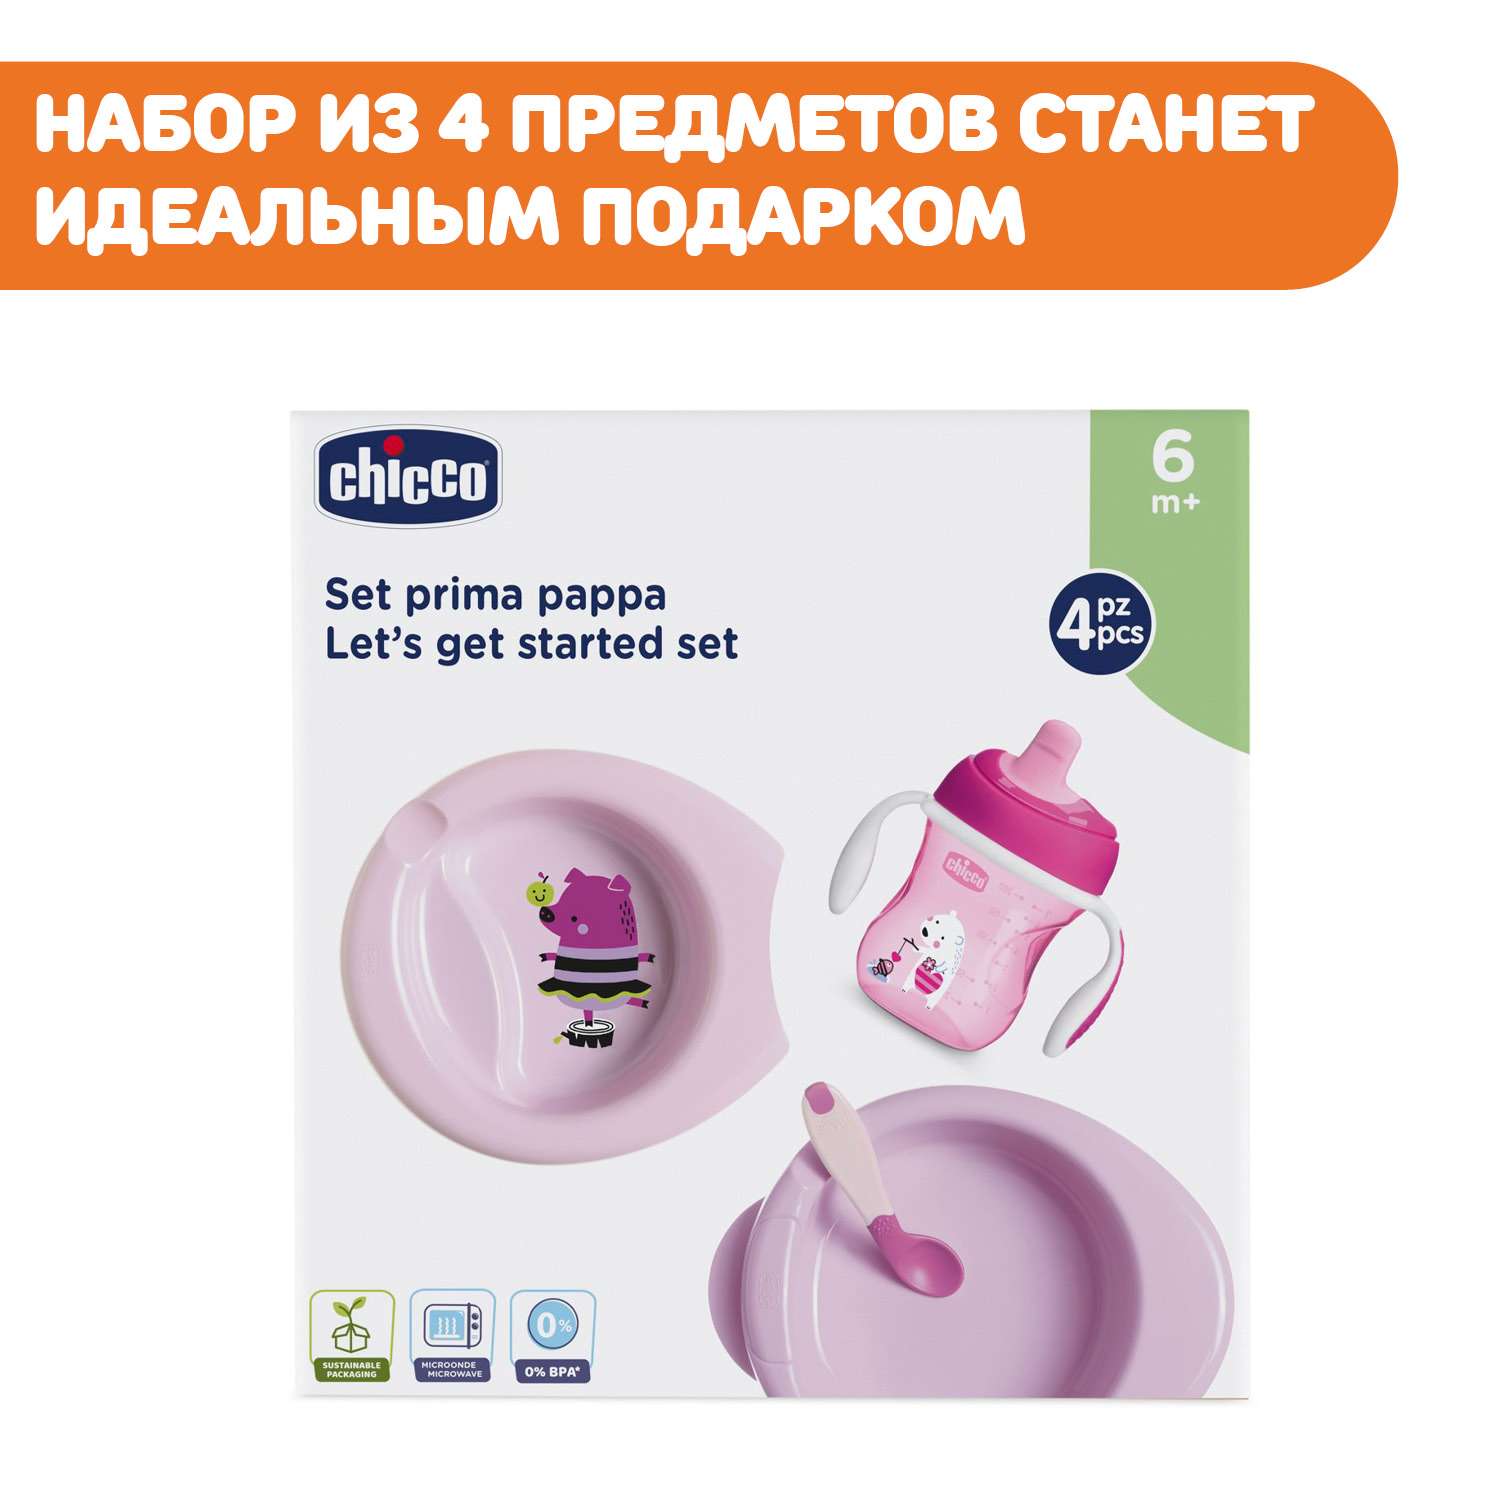 Набор детской посуды CHICCO для кормления от 6 месяцев розовый - фото 2